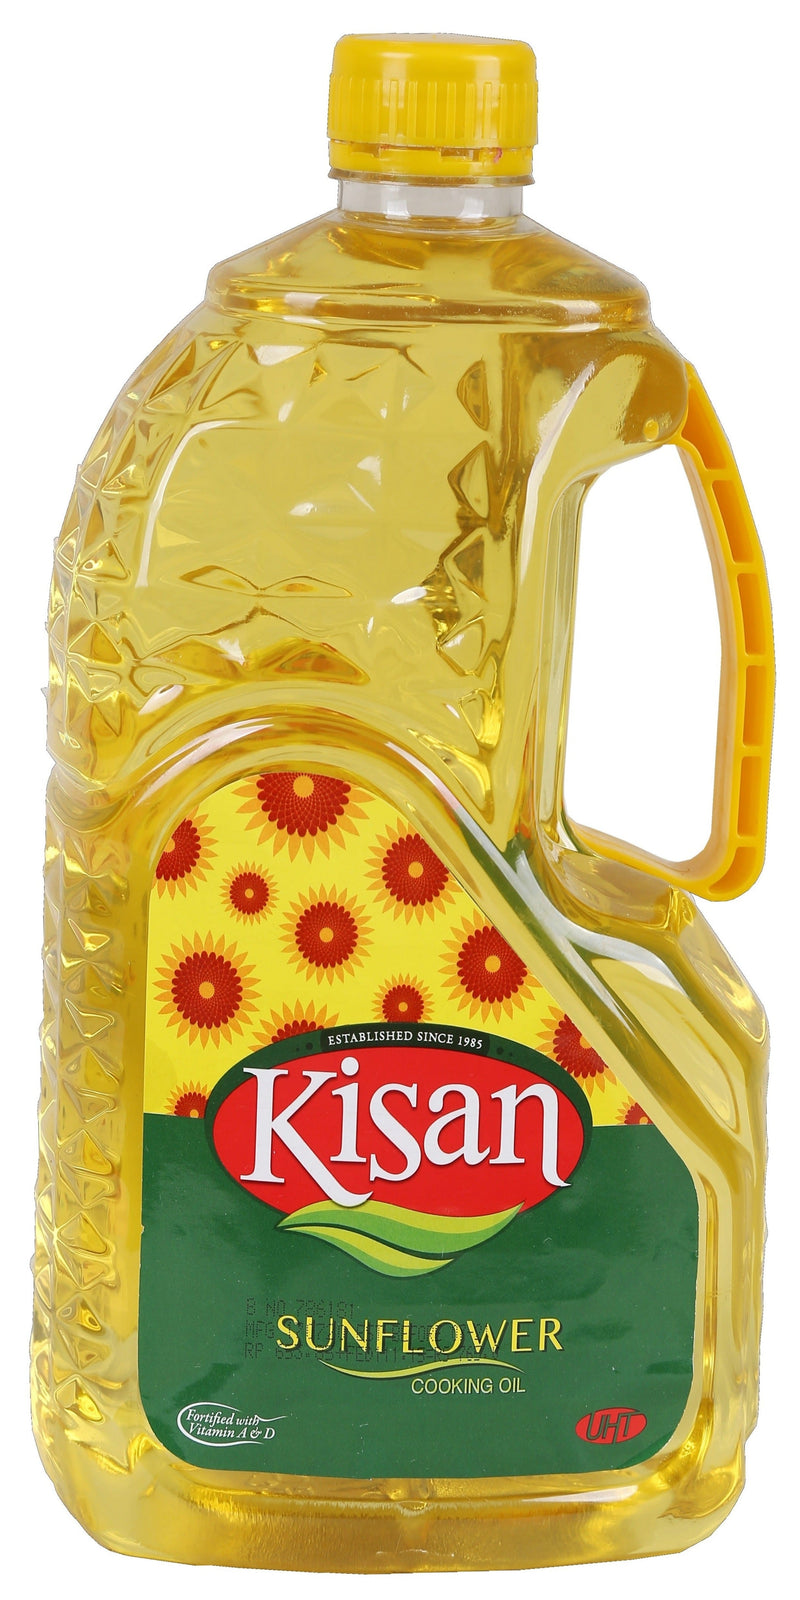 Kisan Sunflower Cooking Oil 4.5 Liter PET Bottle